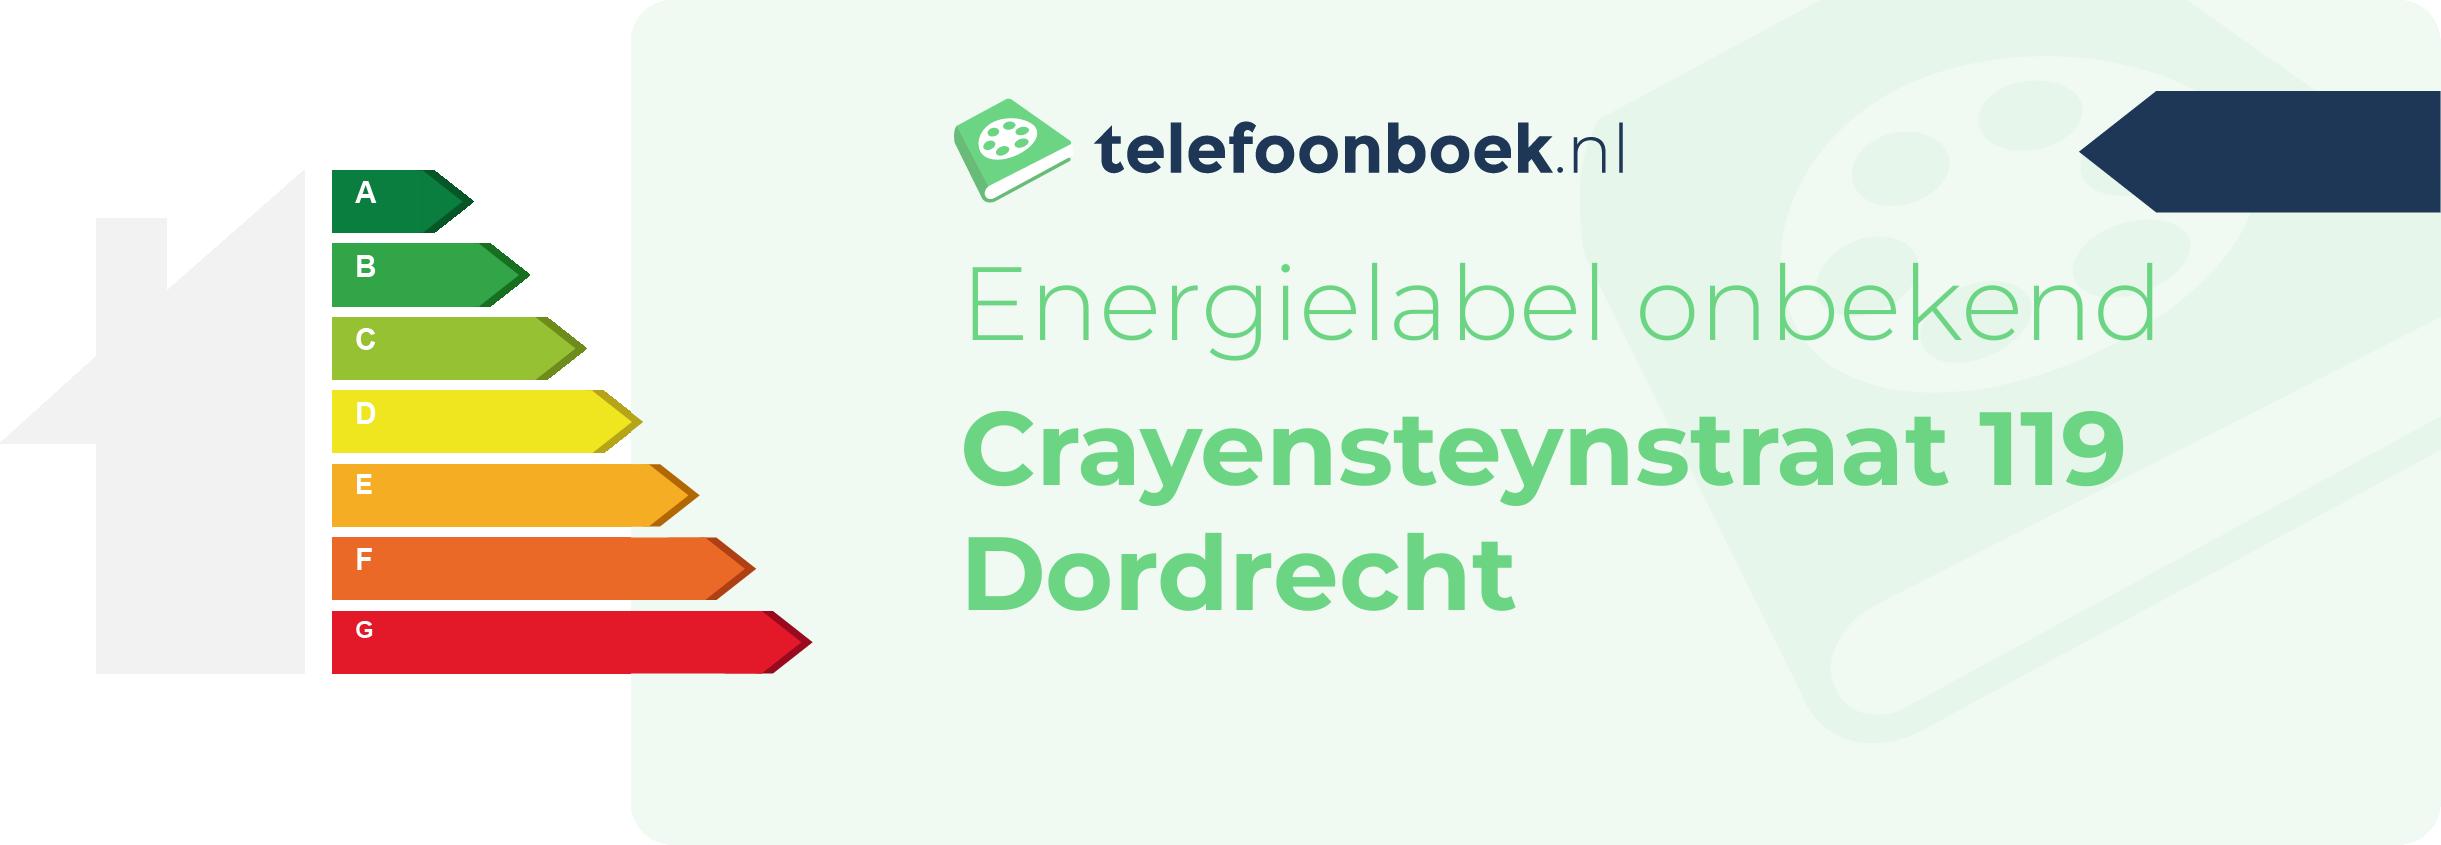 Energielabel Crayensteynstraat 119 Dordrecht